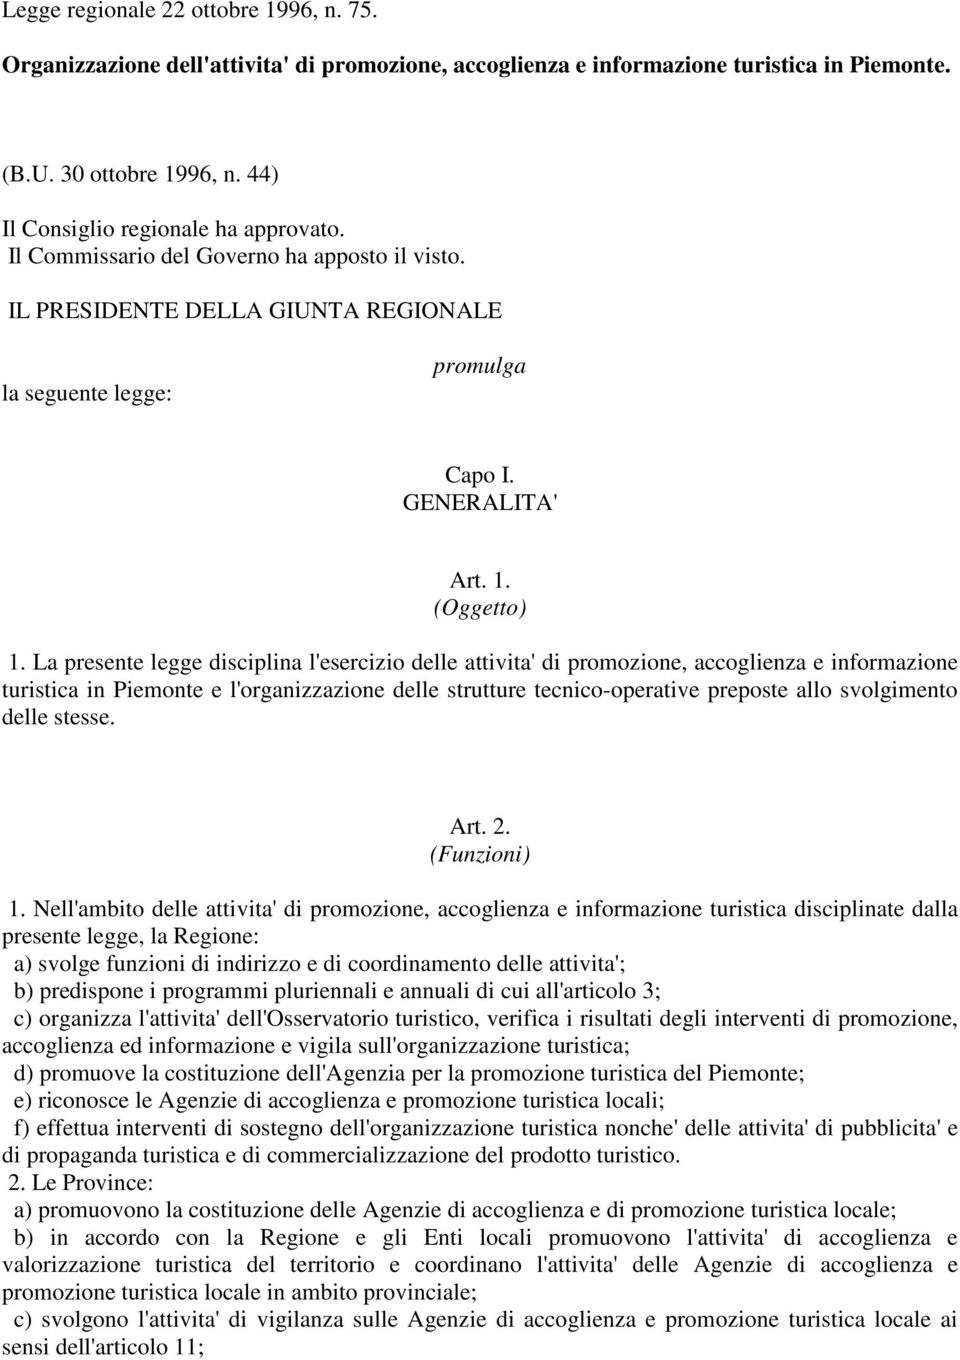 La presente legge disciplina l'esercizio delle attivita' di promozione, accoglienza e informazione turistica in Piemonte e l'organizzazione delle strutture tecnico-operative preposte allo svolgimento